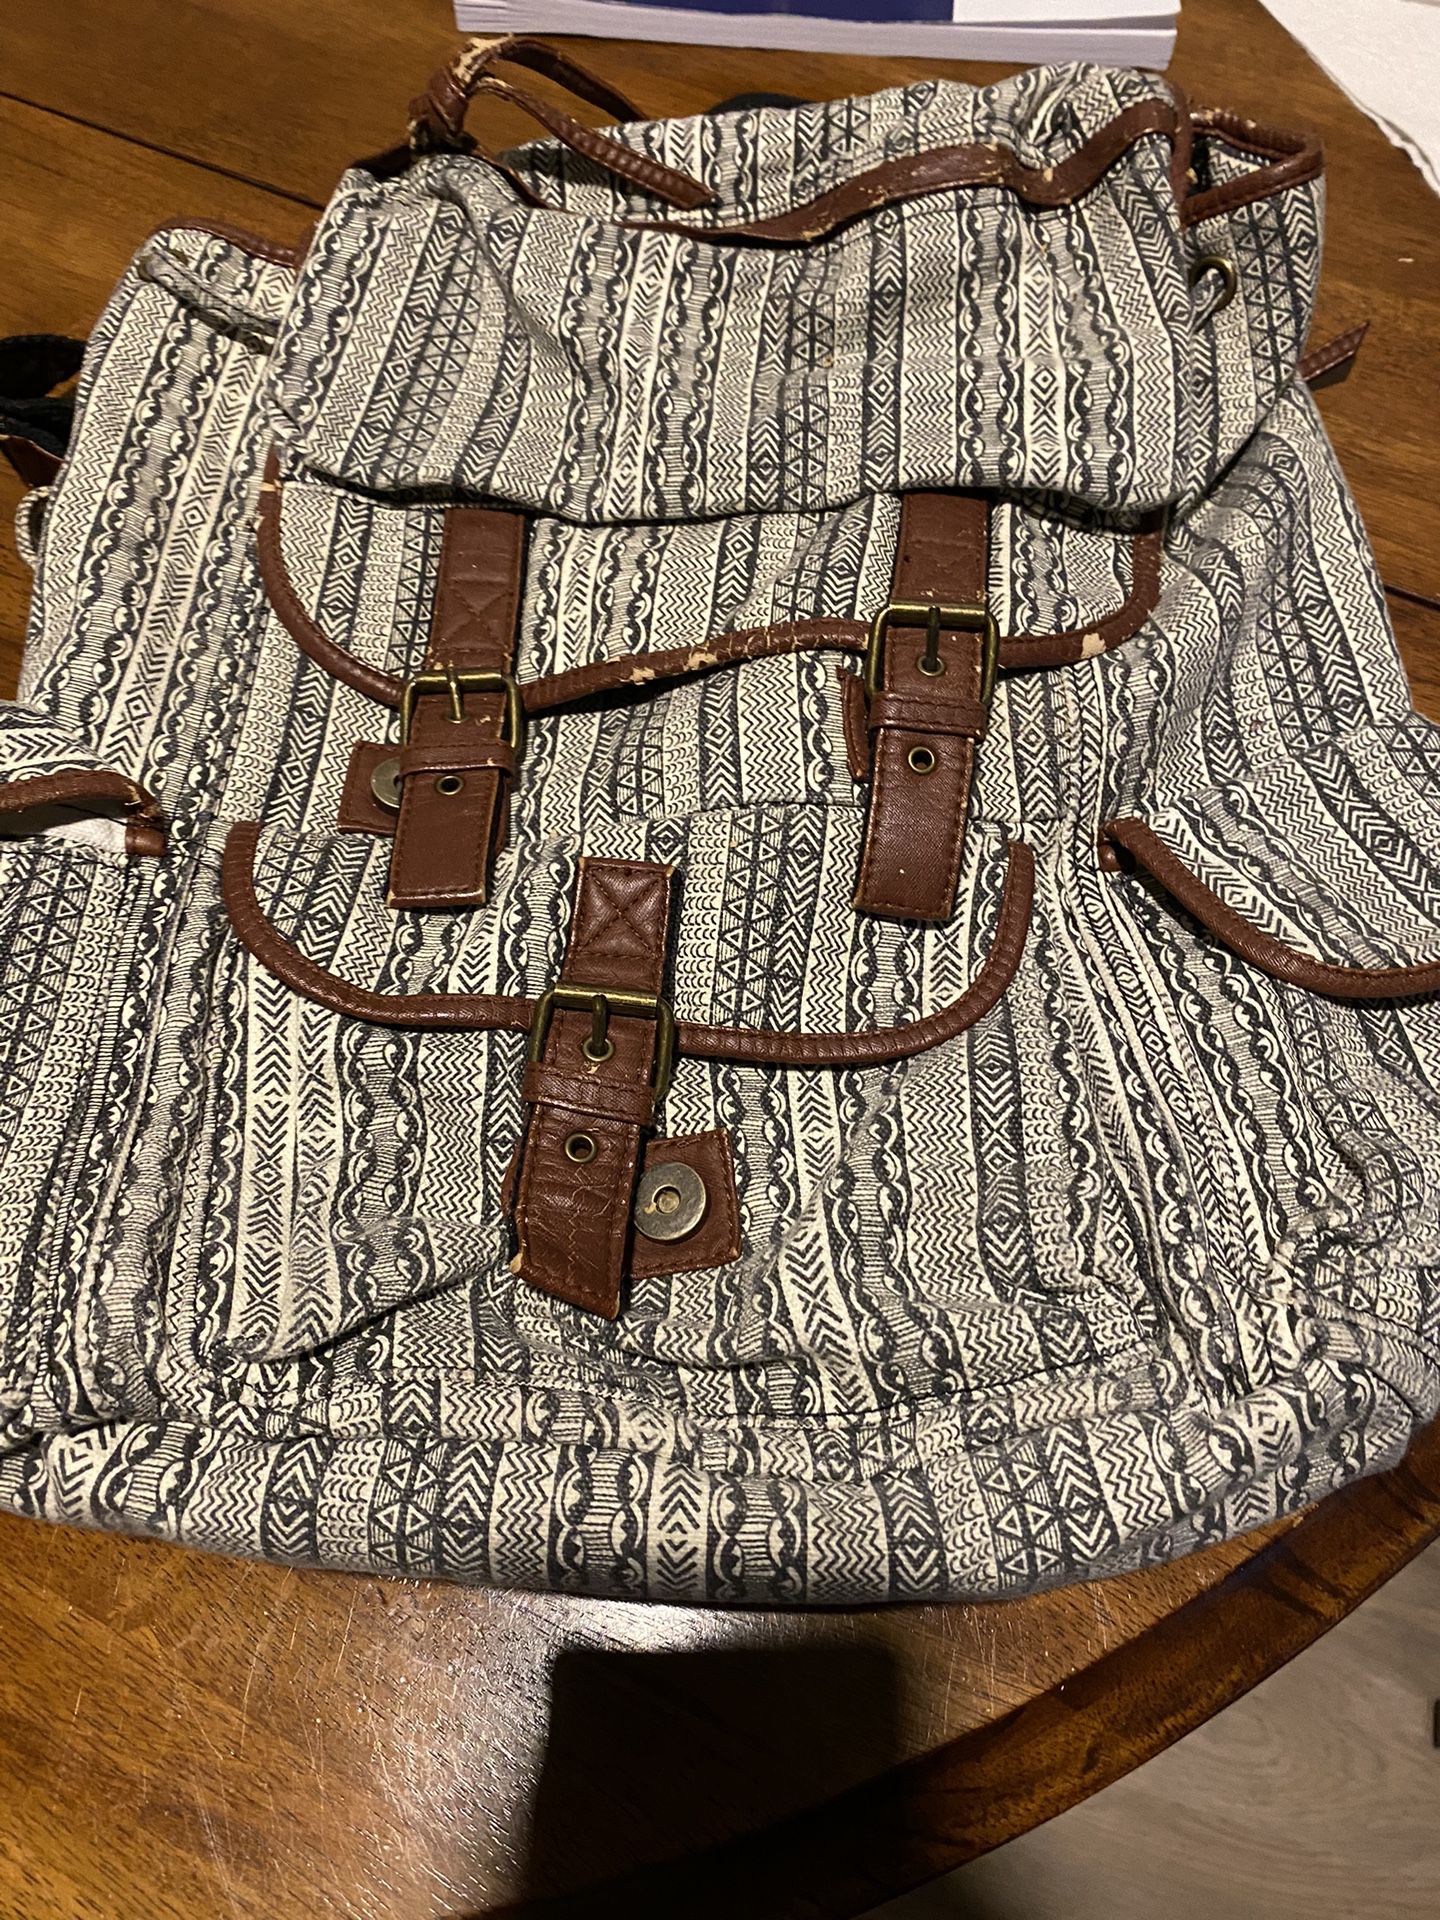 Vintage Backpack 